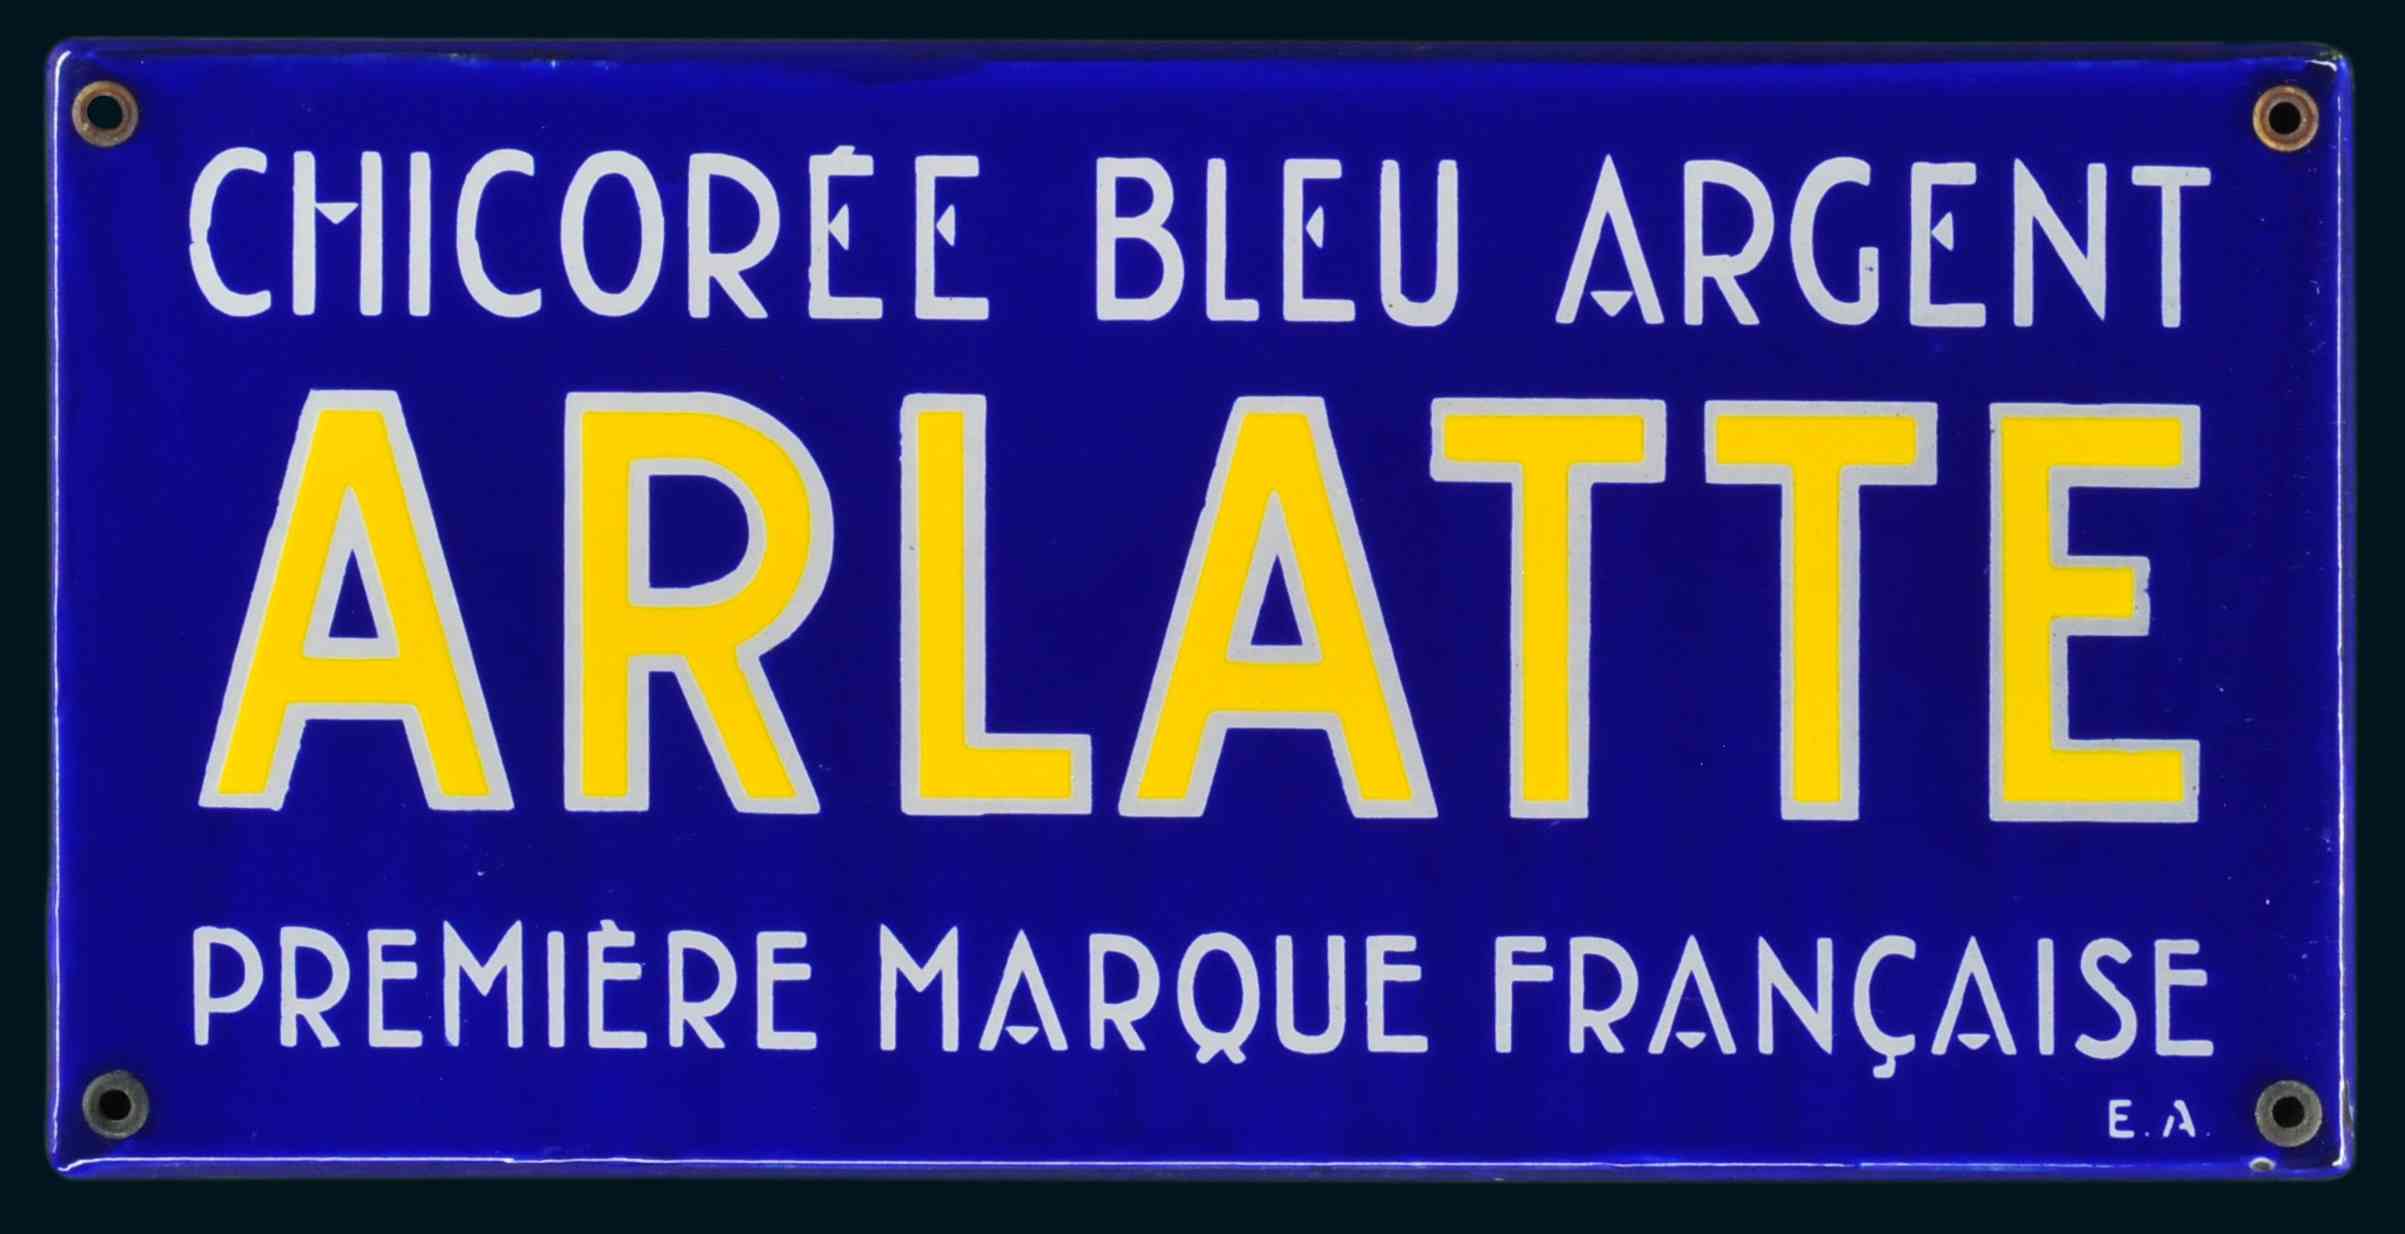 Arlatte Chicorée bleu Argent 